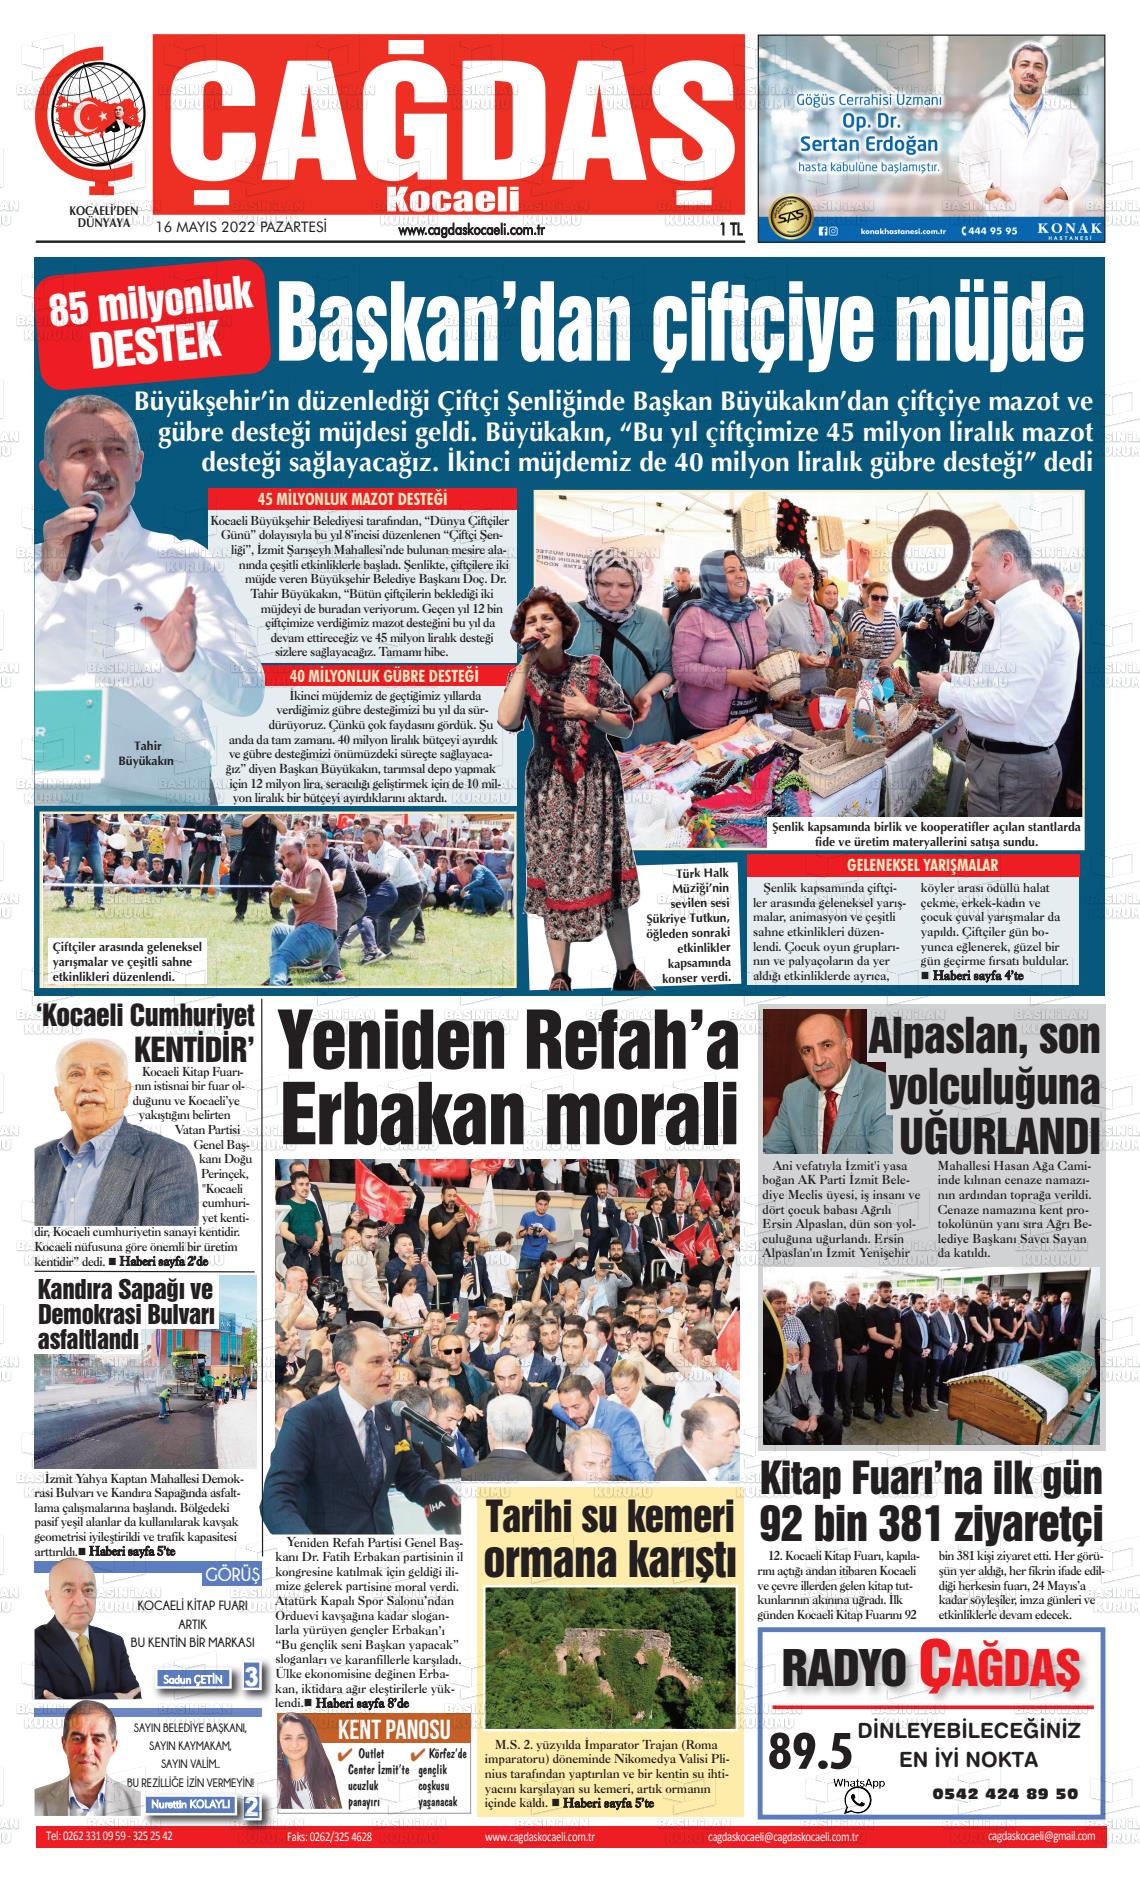 16 Mayıs 2022 Çağdaş Kocaeli Gazete Manşeti